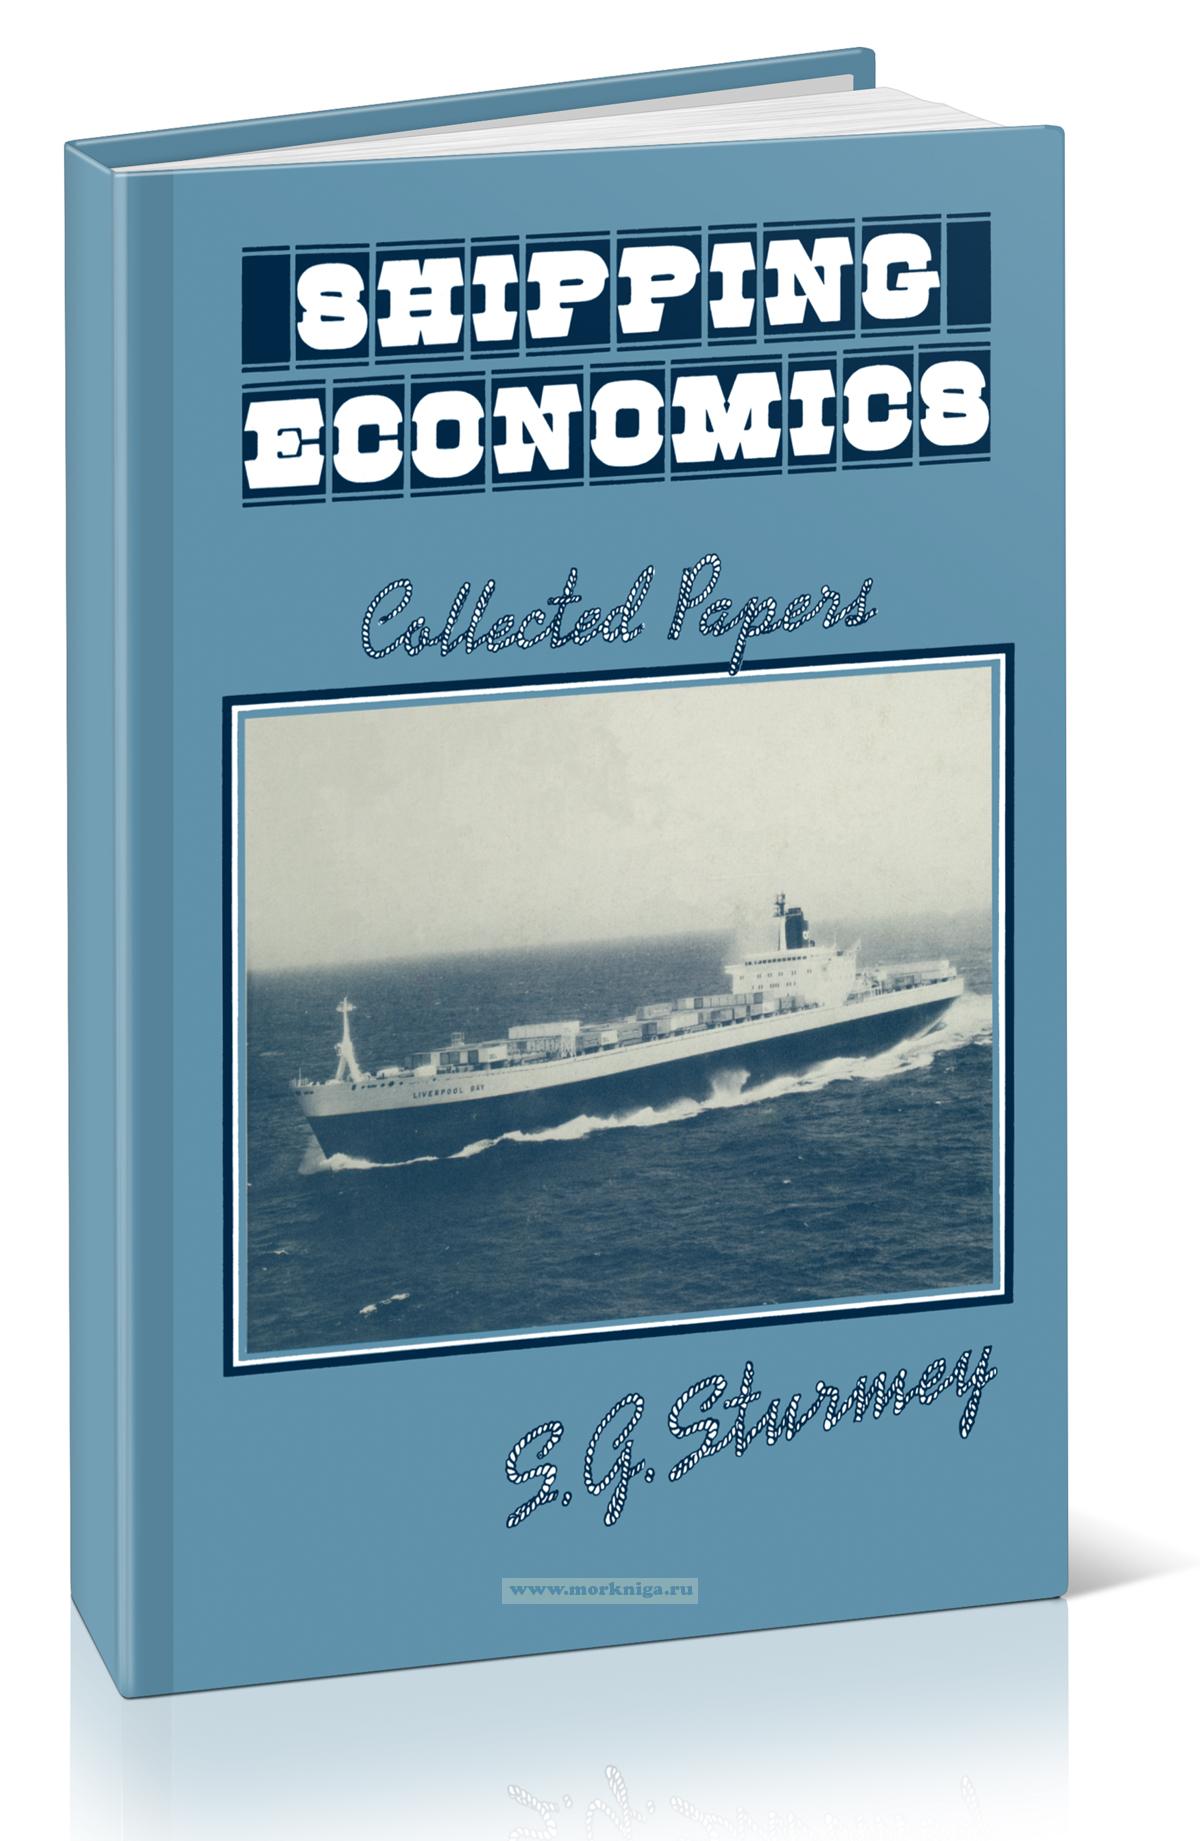 Shipping Economics. Collected Papers/Экономика в судоходстве: Сборник статей